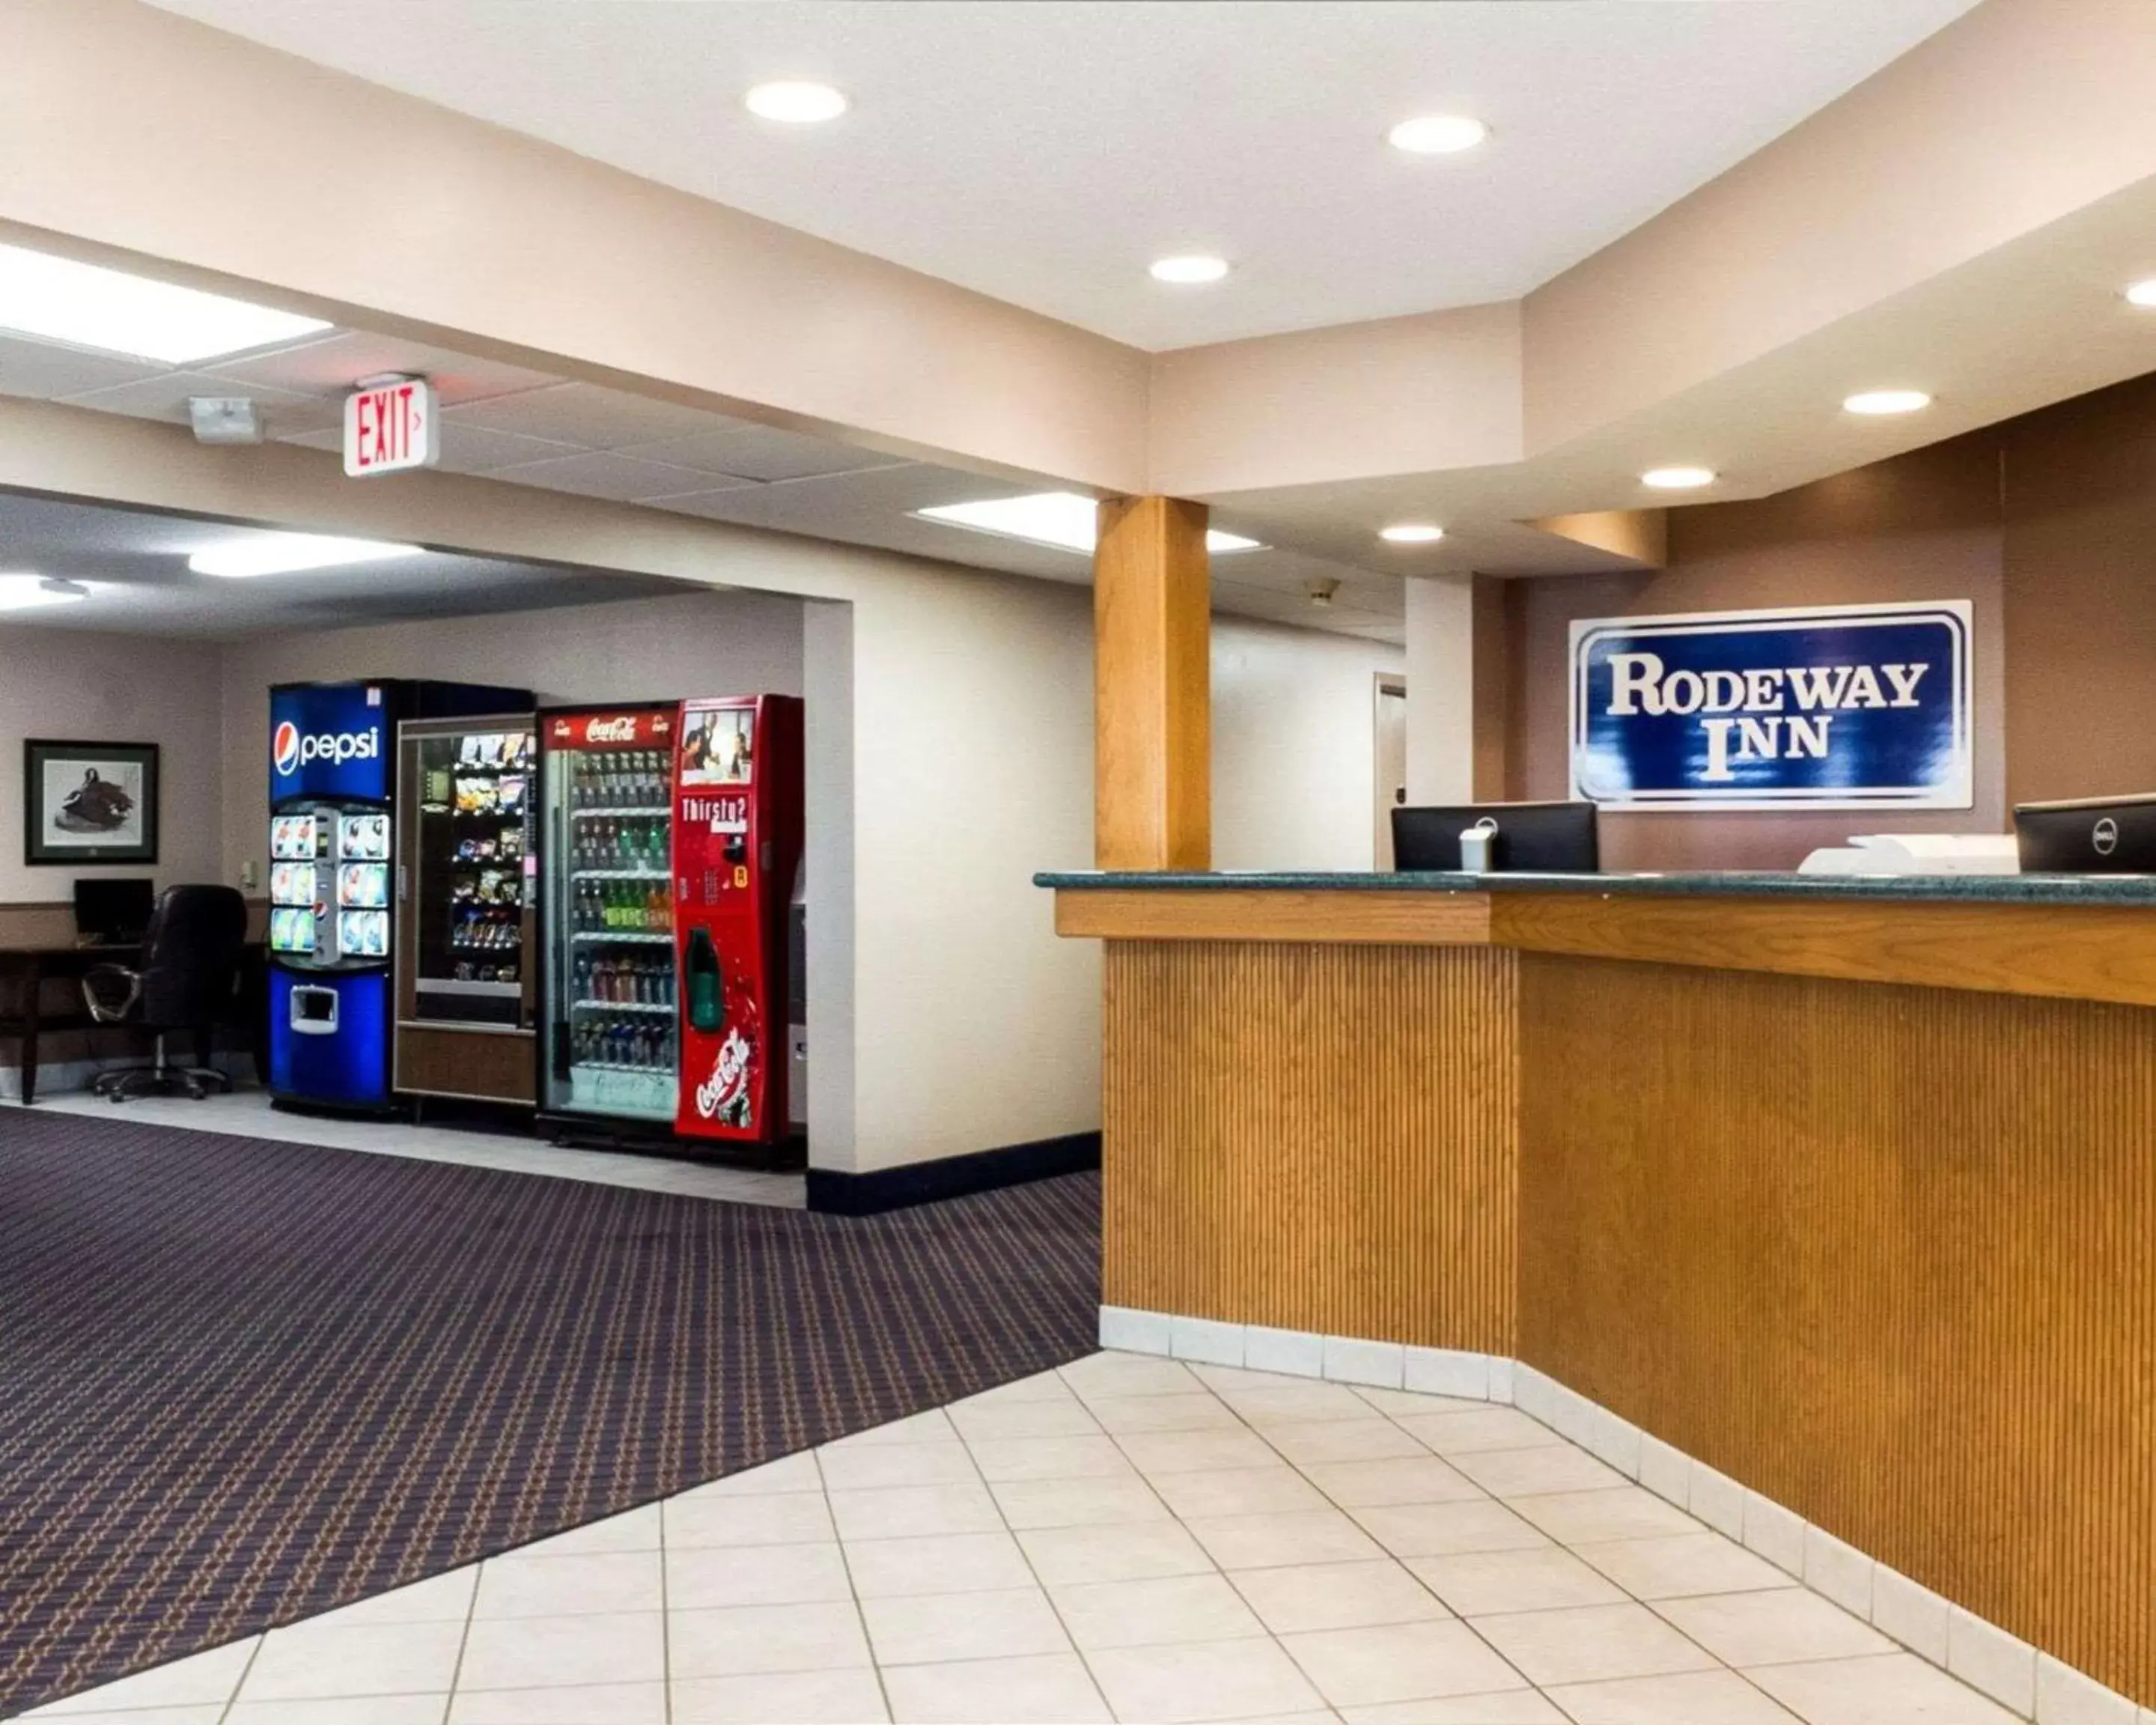 Lobby or reception in Rodeway Inn Fargo